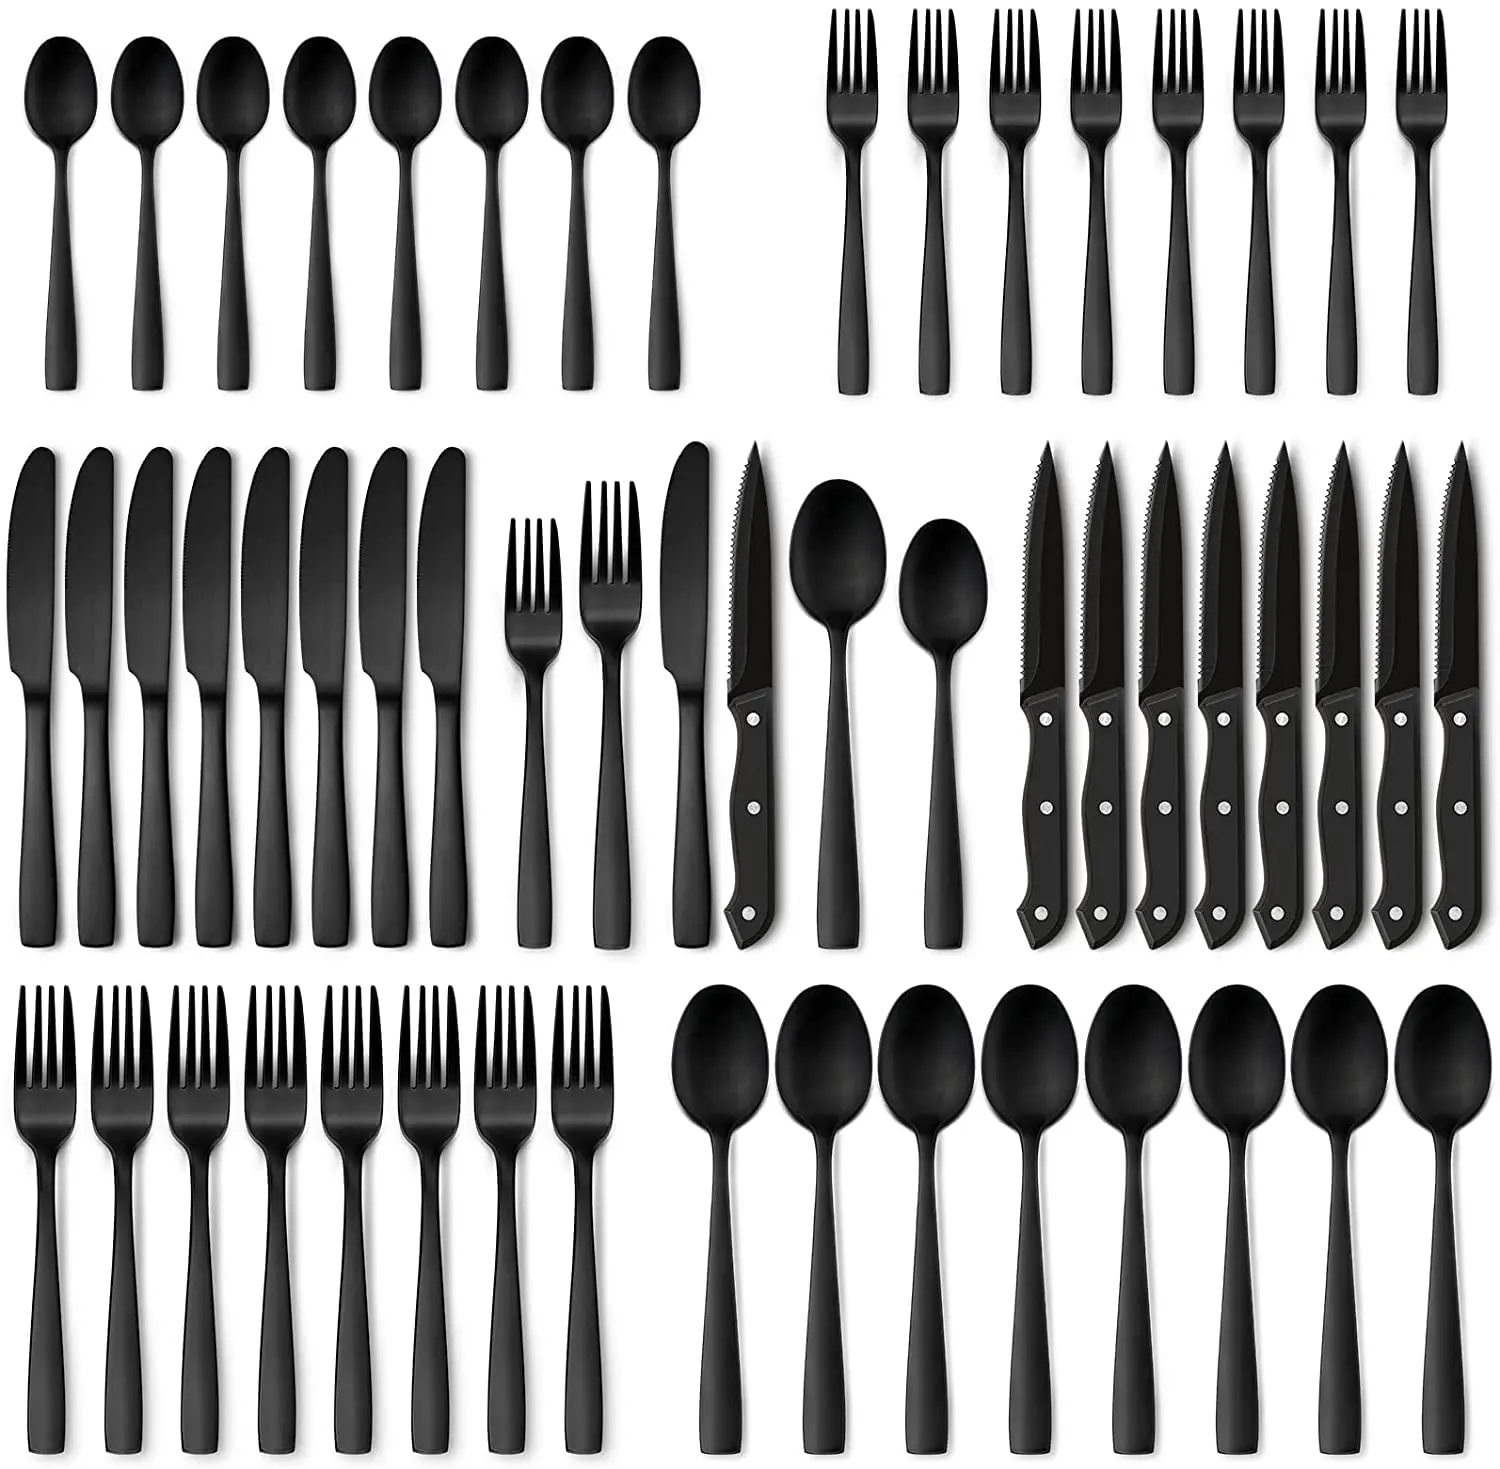 

Элегантный набор черных столовых приборов из 48 предметов с ножами для стейка-8 предметов для посуды из нержавеющей стали, идеально подходит для кухни